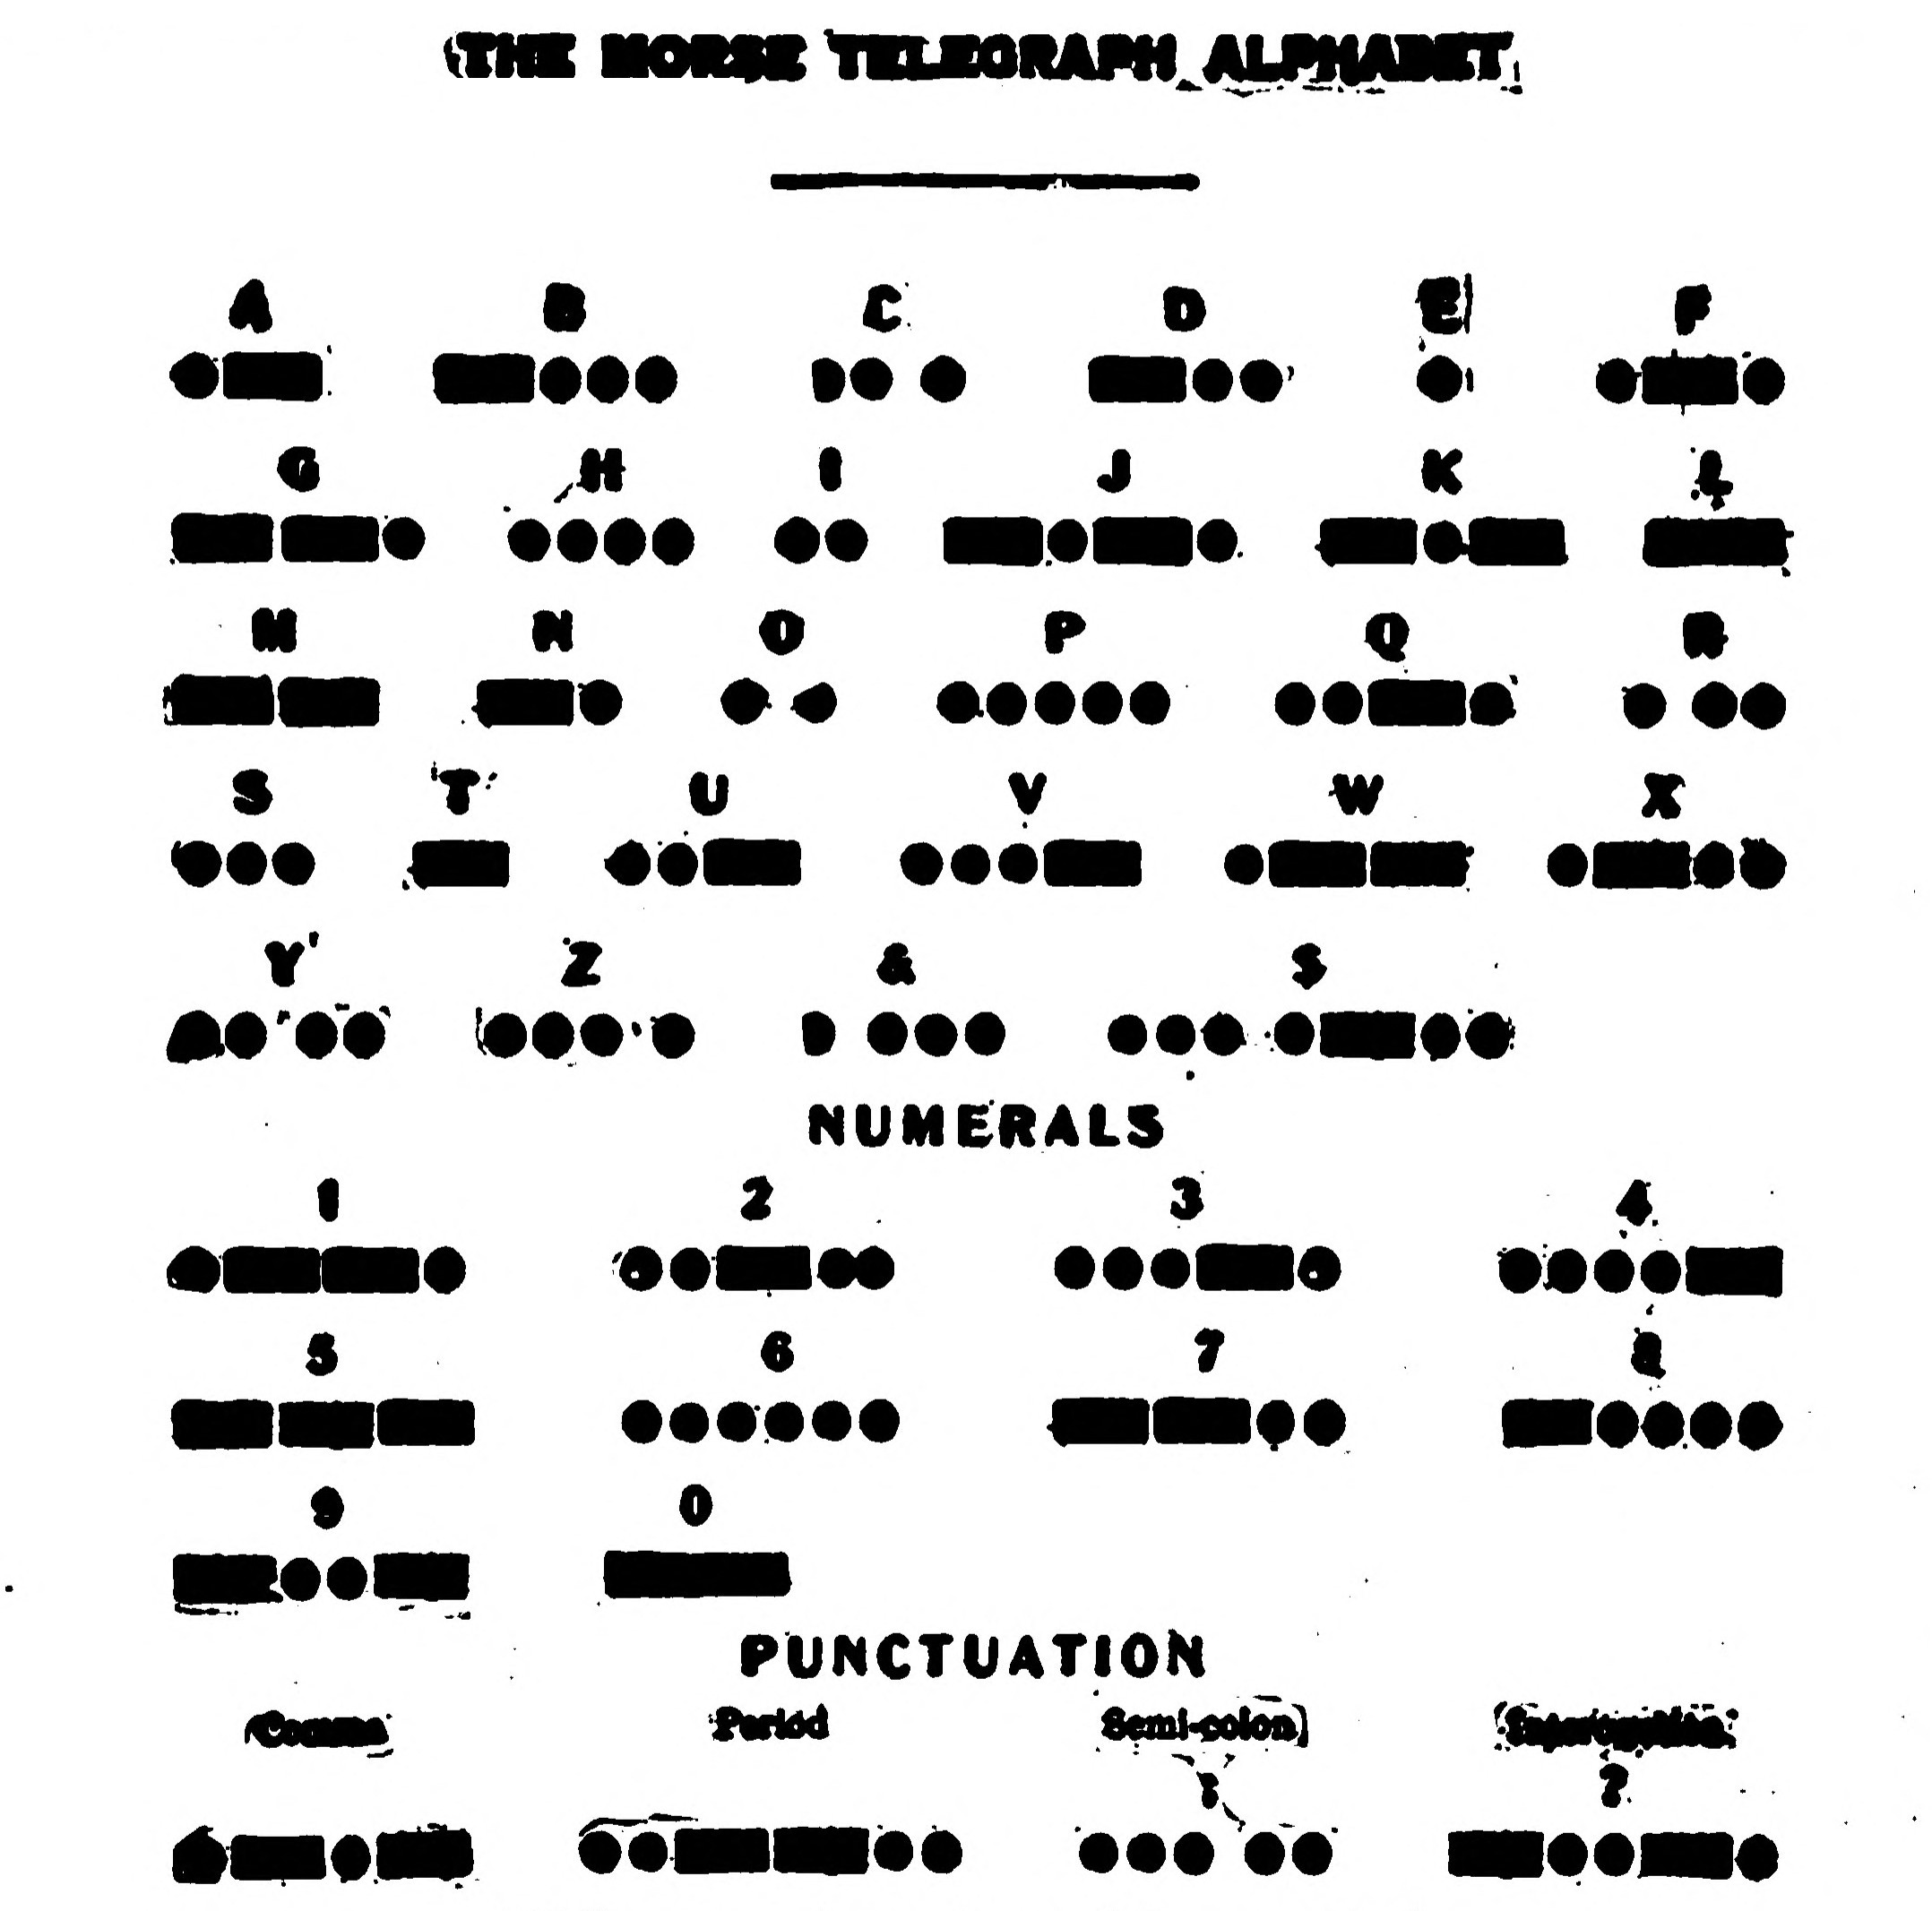 FIG. 91.—American Morse Code.